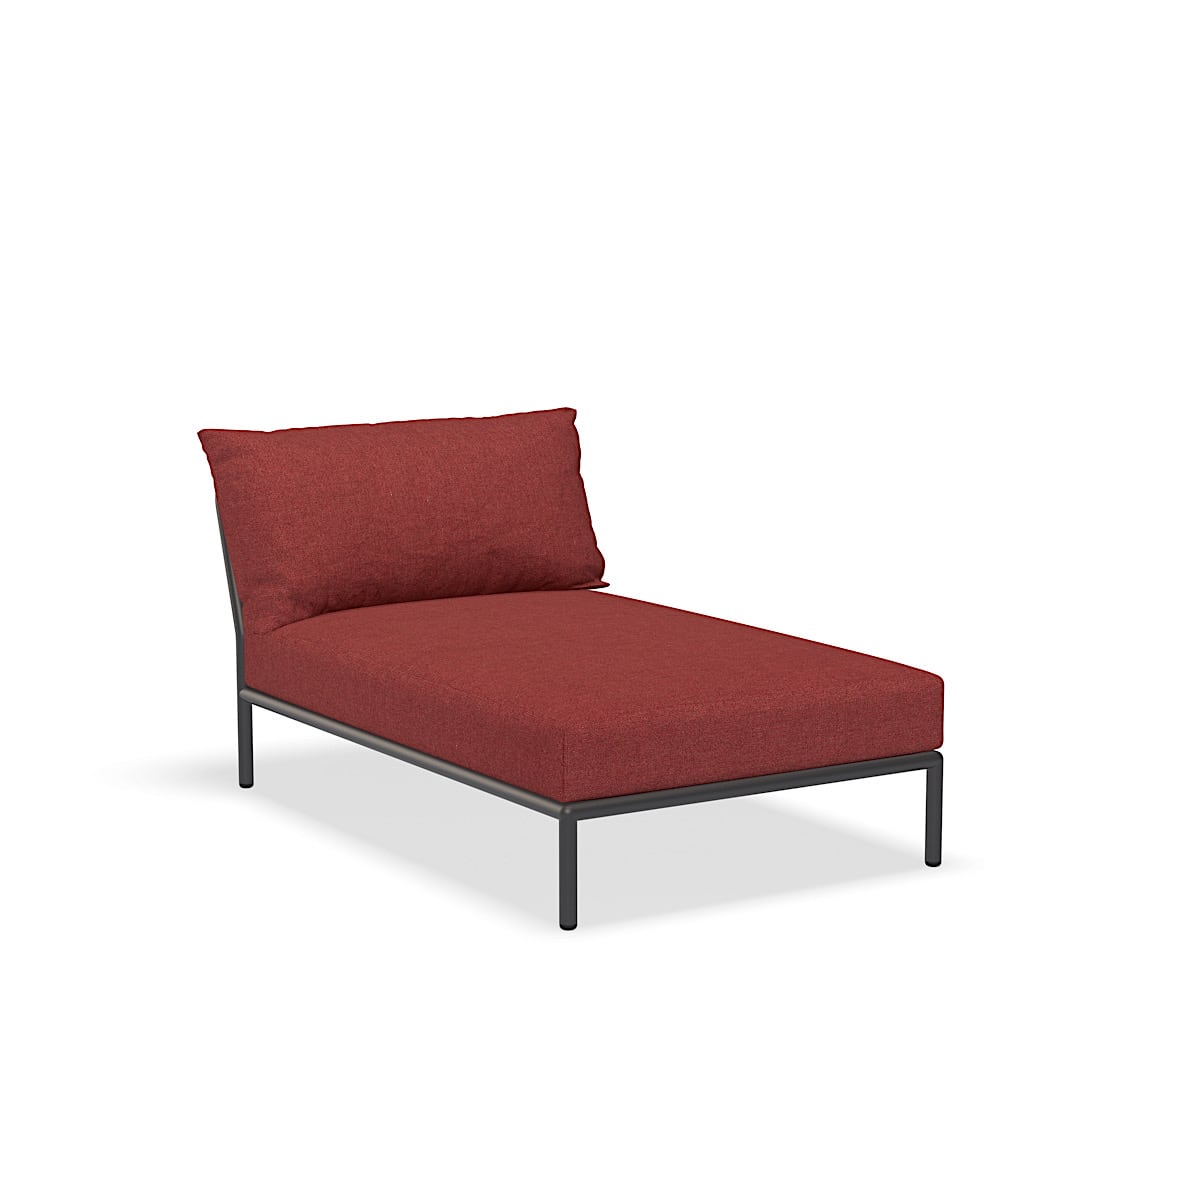 כסא נוח - 22209-1651 - כיסא נוח, ארגמן (HERITAGE), מבנה אפור כהה